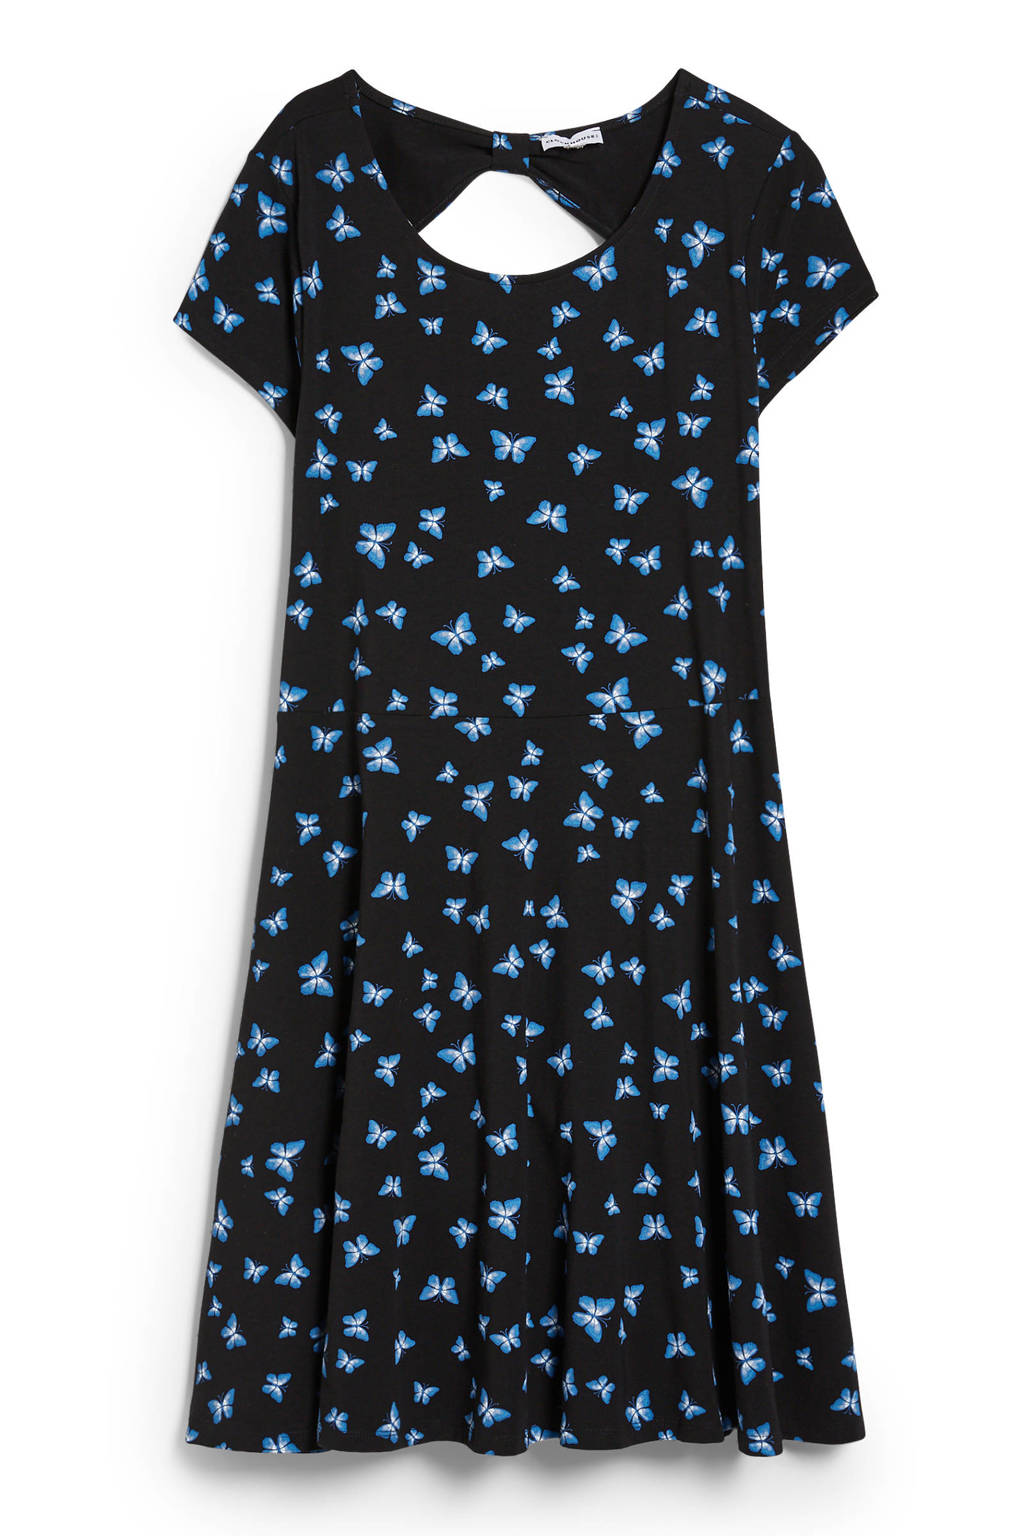 C&A Clockhouse A-lijn jurk met dierenprint zwart/blauw